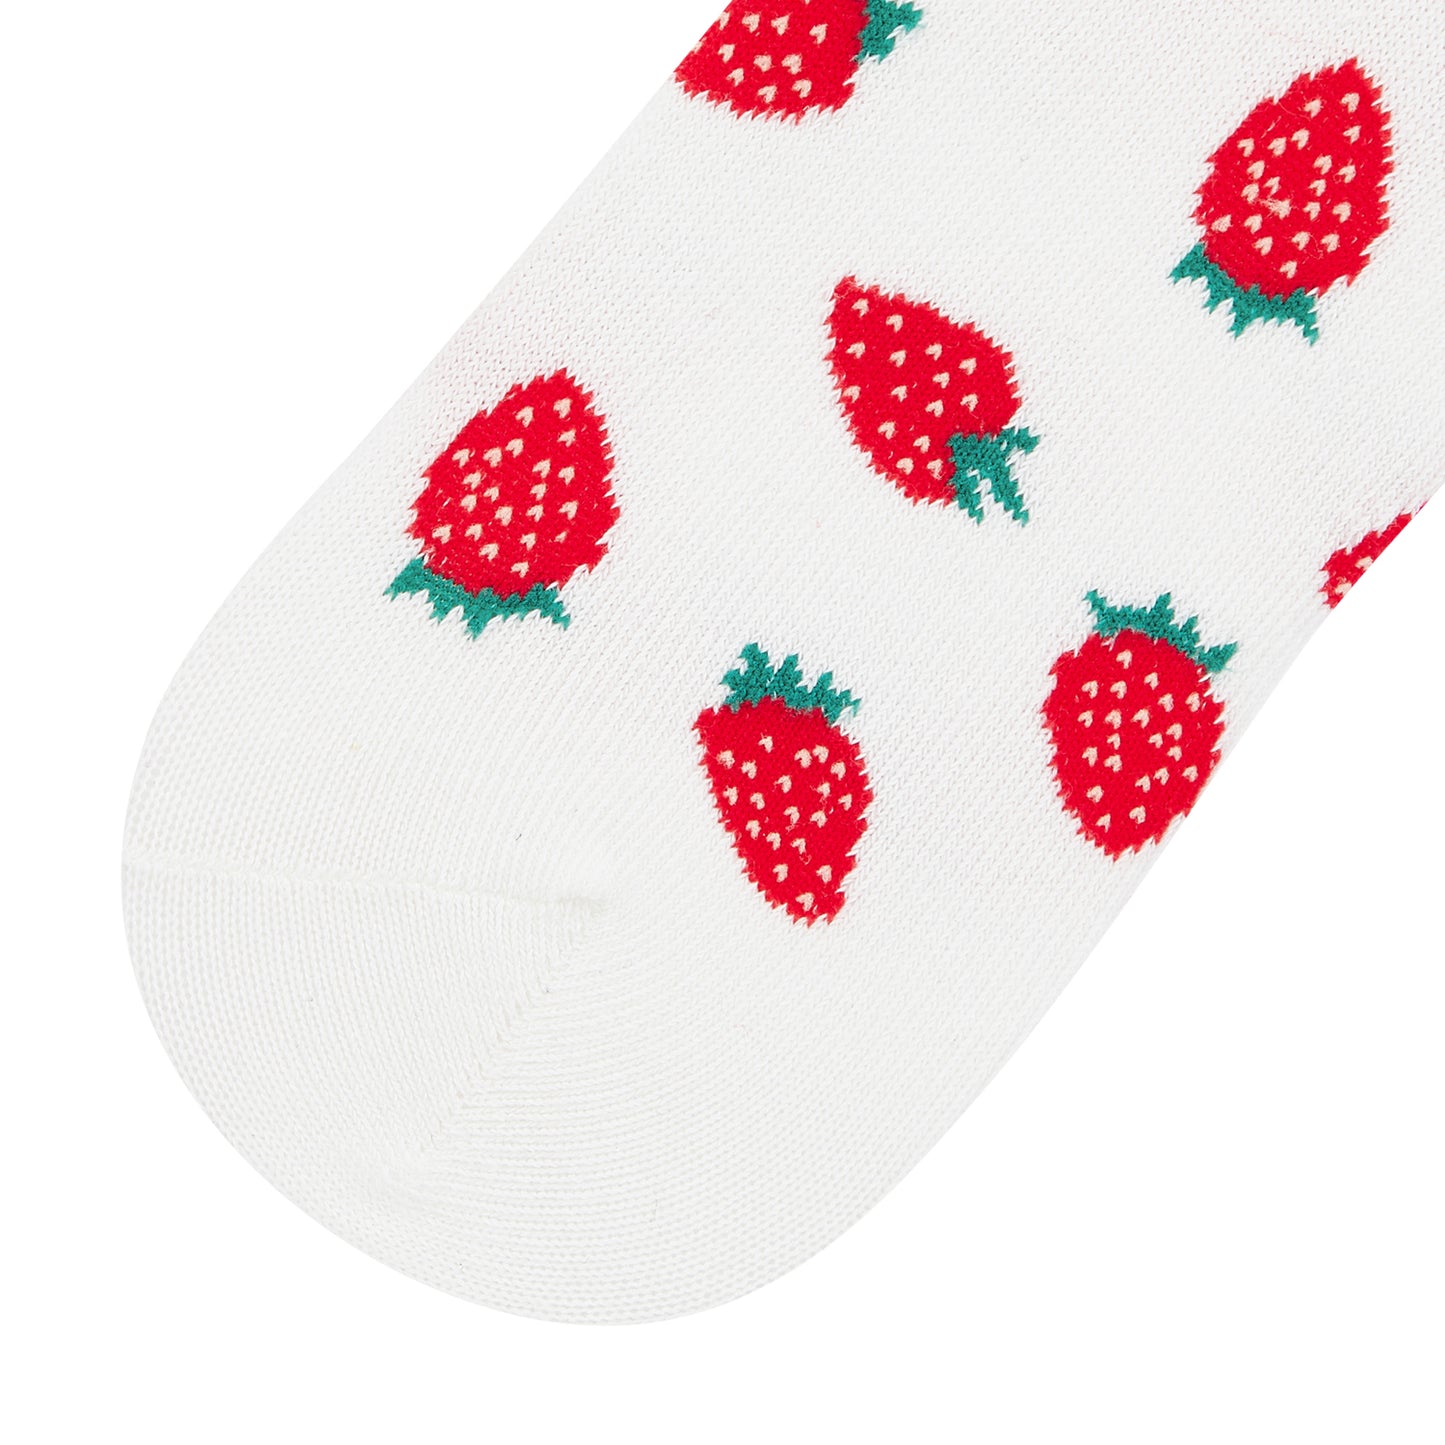 Womens Strawberry Printed Quarter Length Socks - IDENTITY Apparel Shop